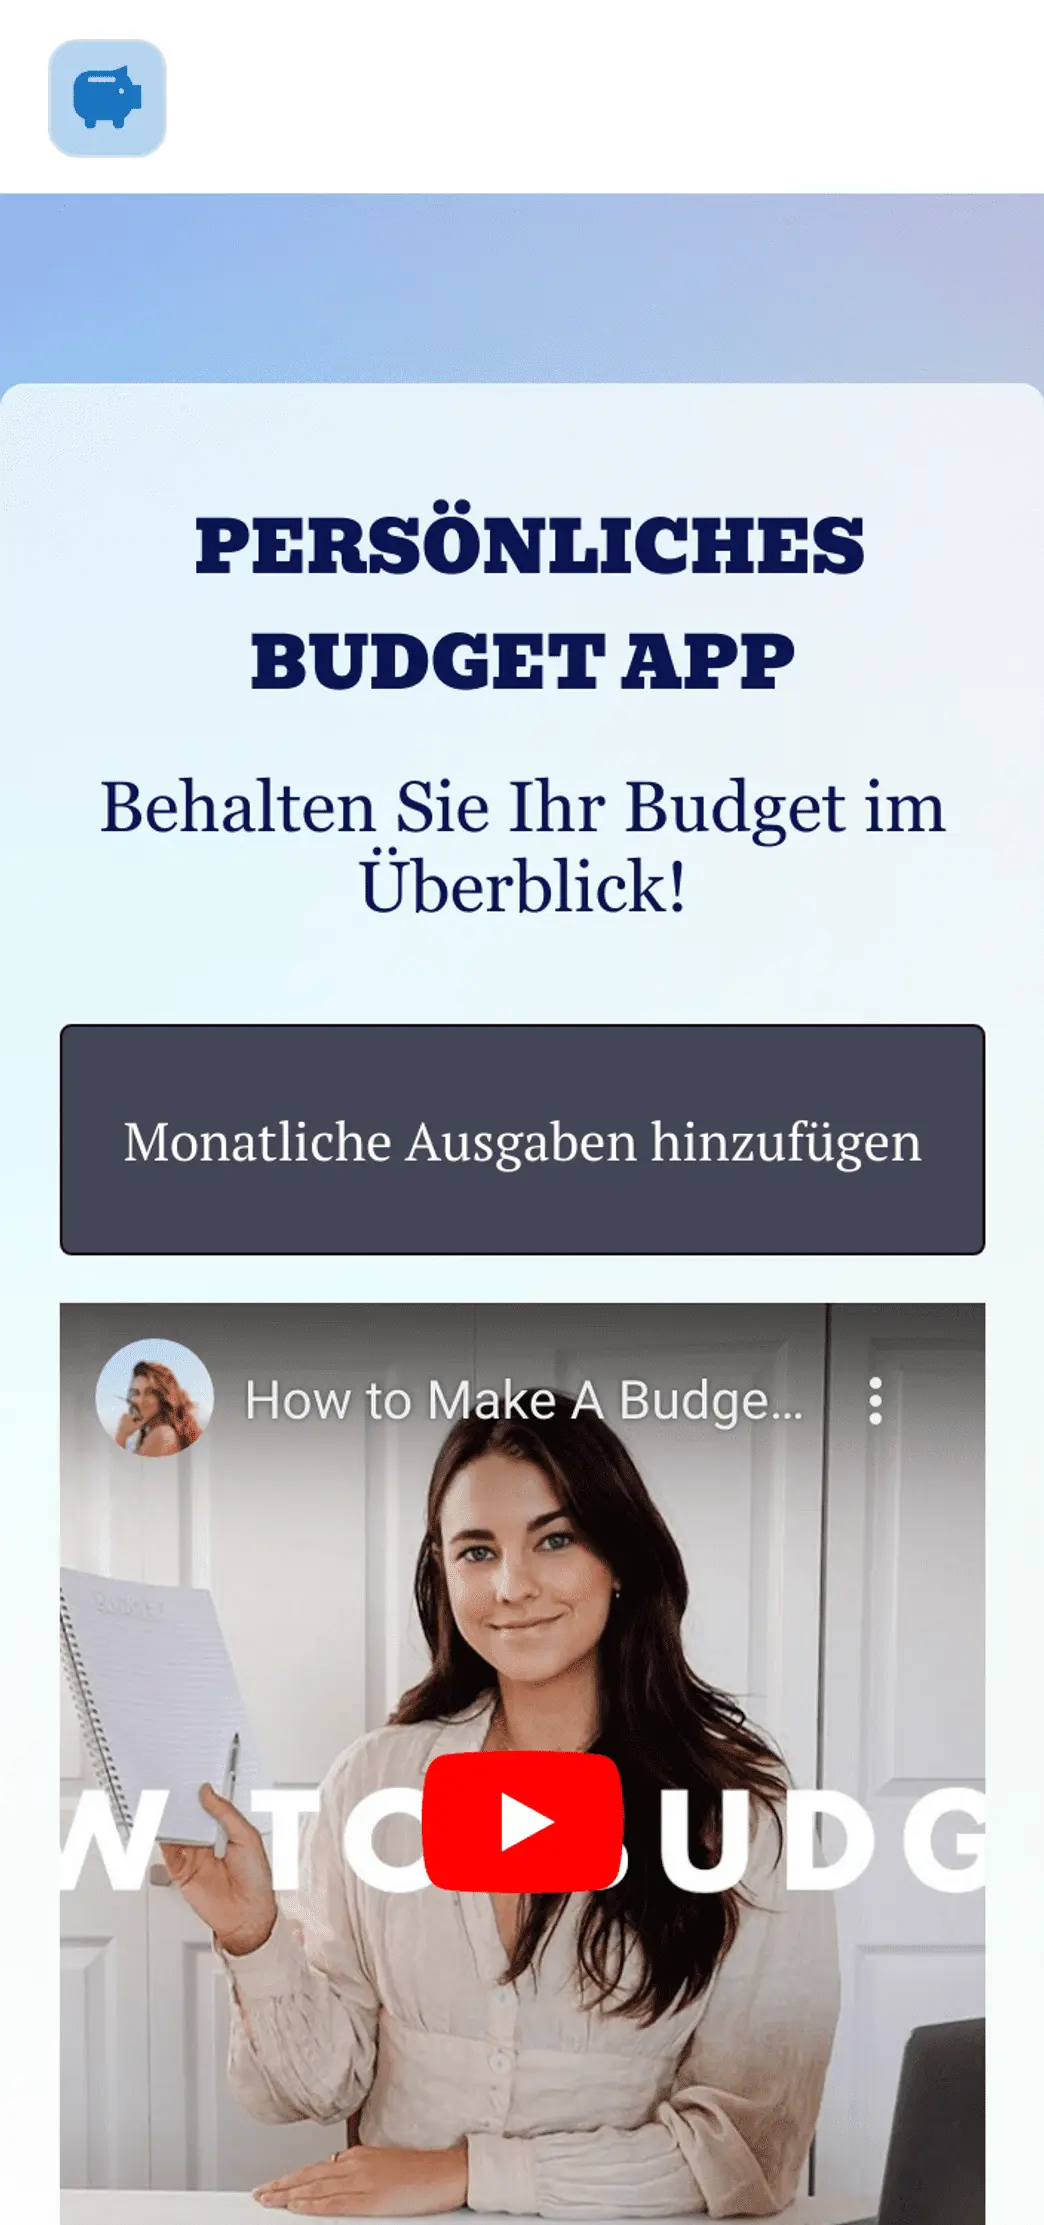 Persönliches Budget App